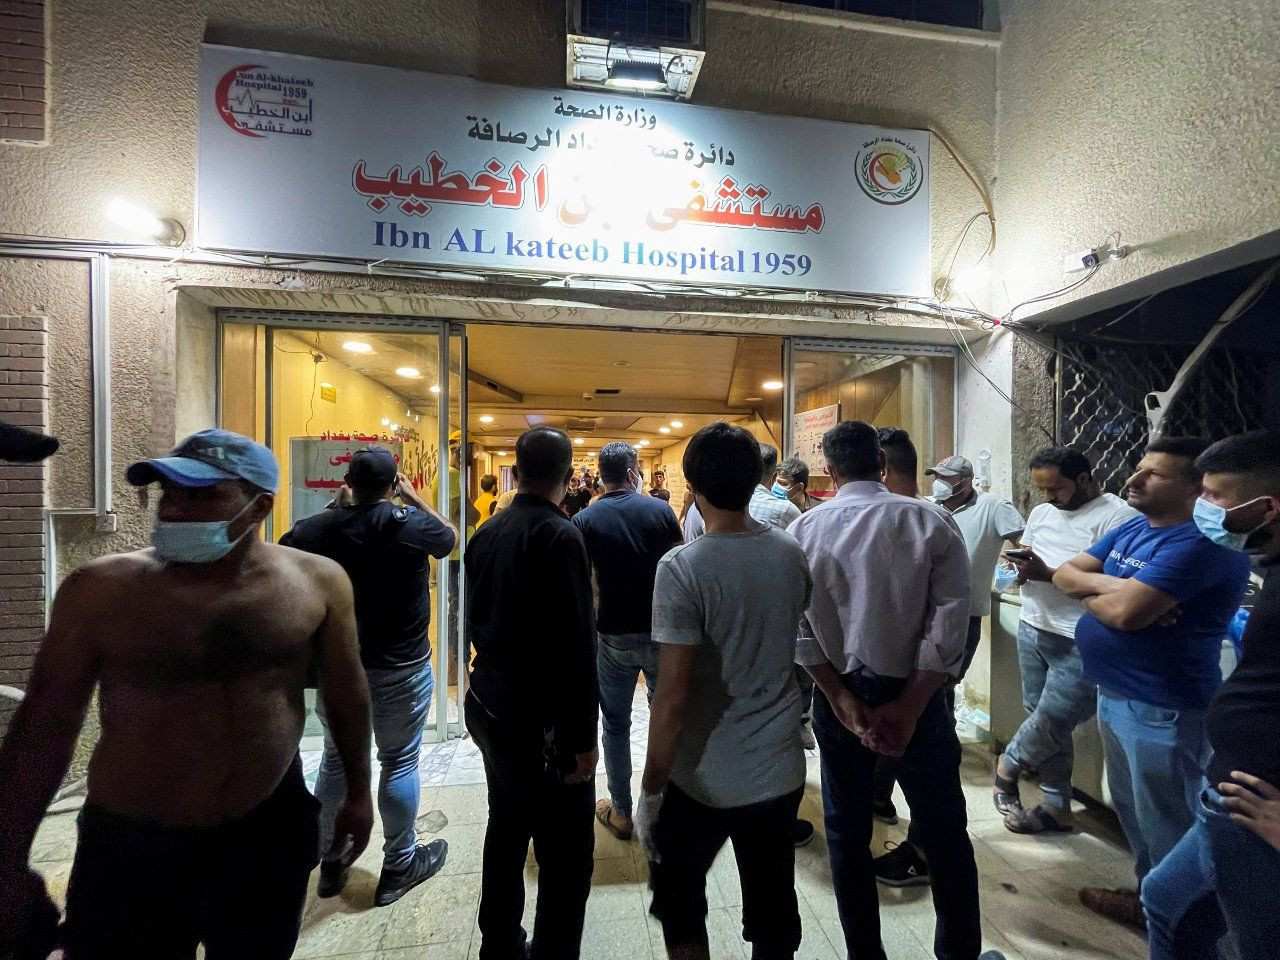 Bağdat'taki hastane yangınında ölü sayısı 82'ye yükseldi, görgü tanığı 'Herkes atlıyordu' dedi - Sayfa 3